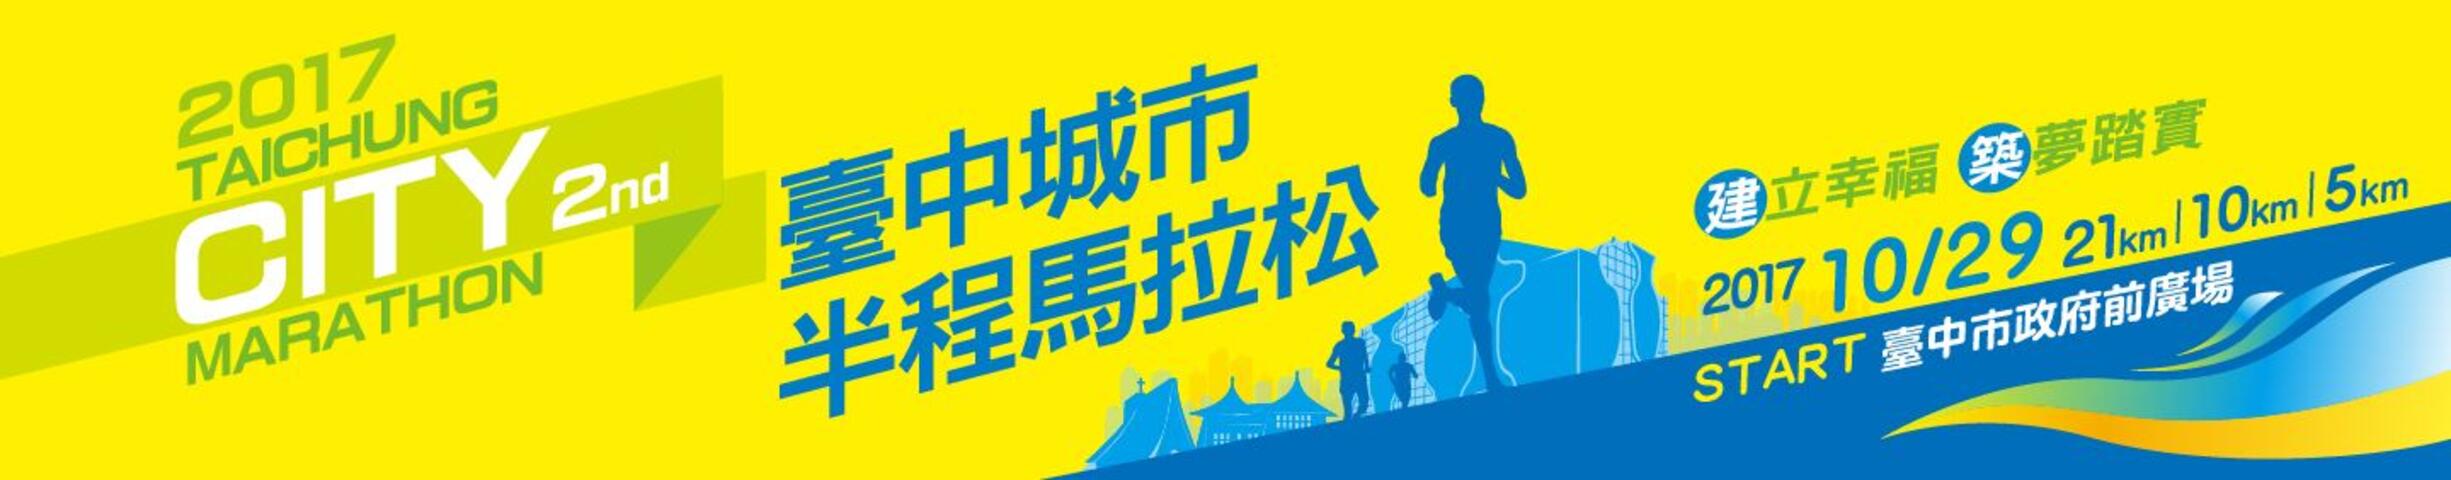 2017第二届台中城市半程马拉松